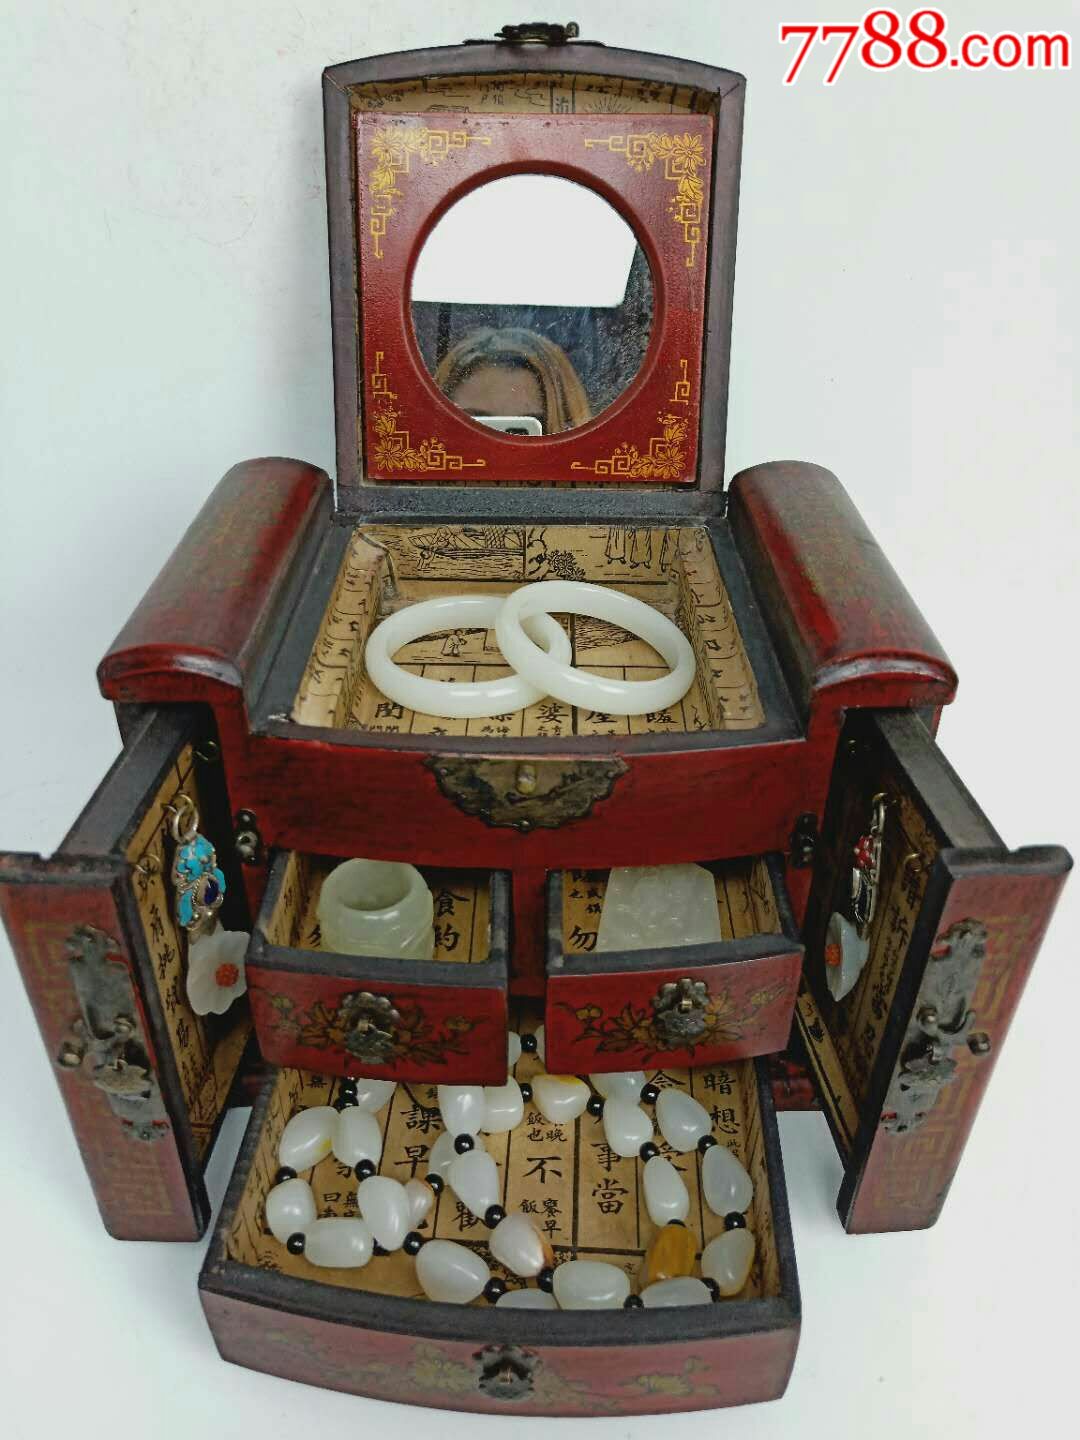 清代宫廷玉器珍藏,楠木盒首饰一套,保存完整,品相一流,玉质油润,全品